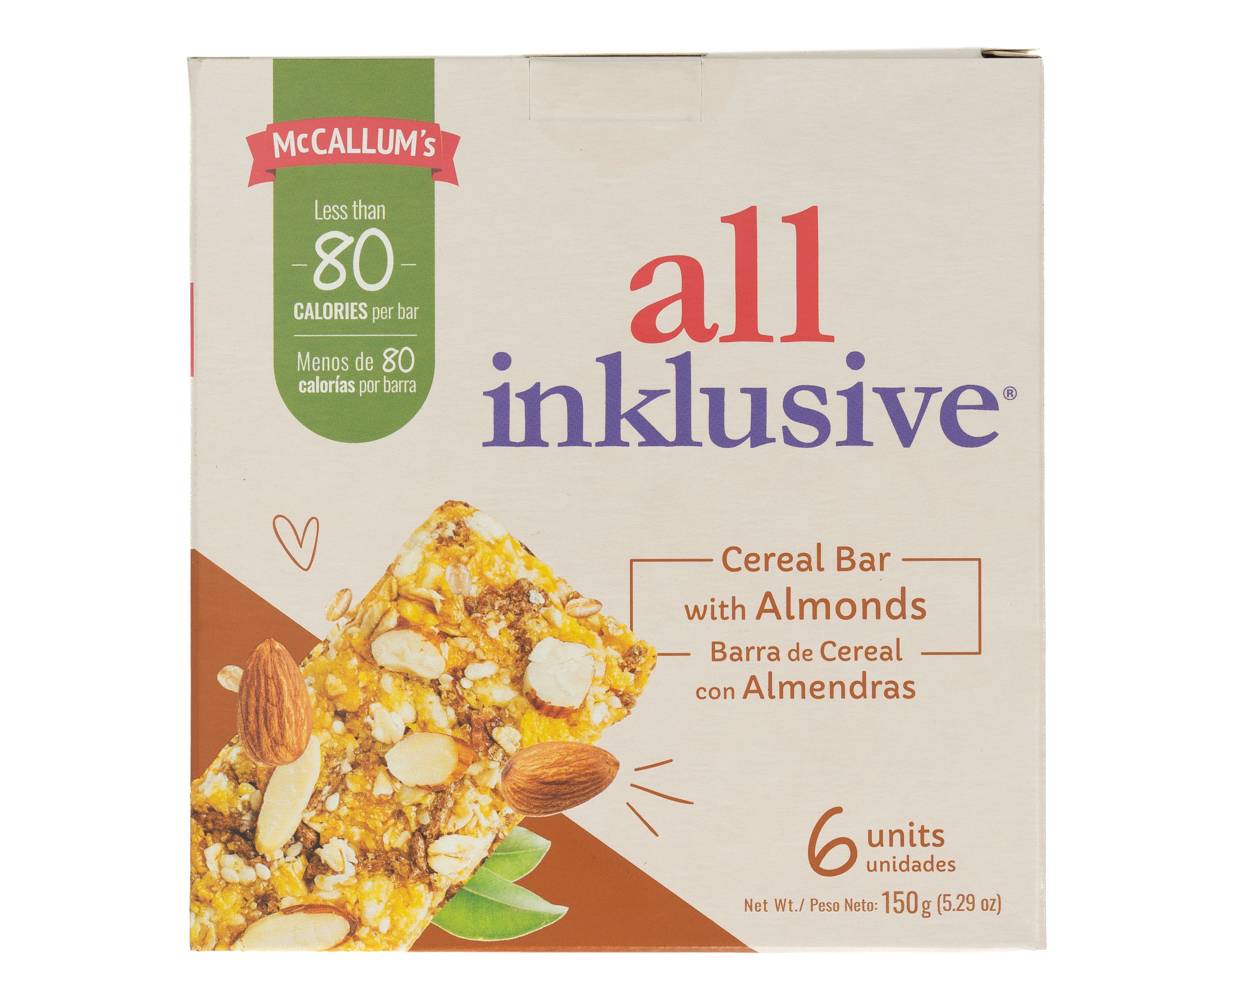 Mccallum's all inklusive barras de cereal con almendras (6 unidades)